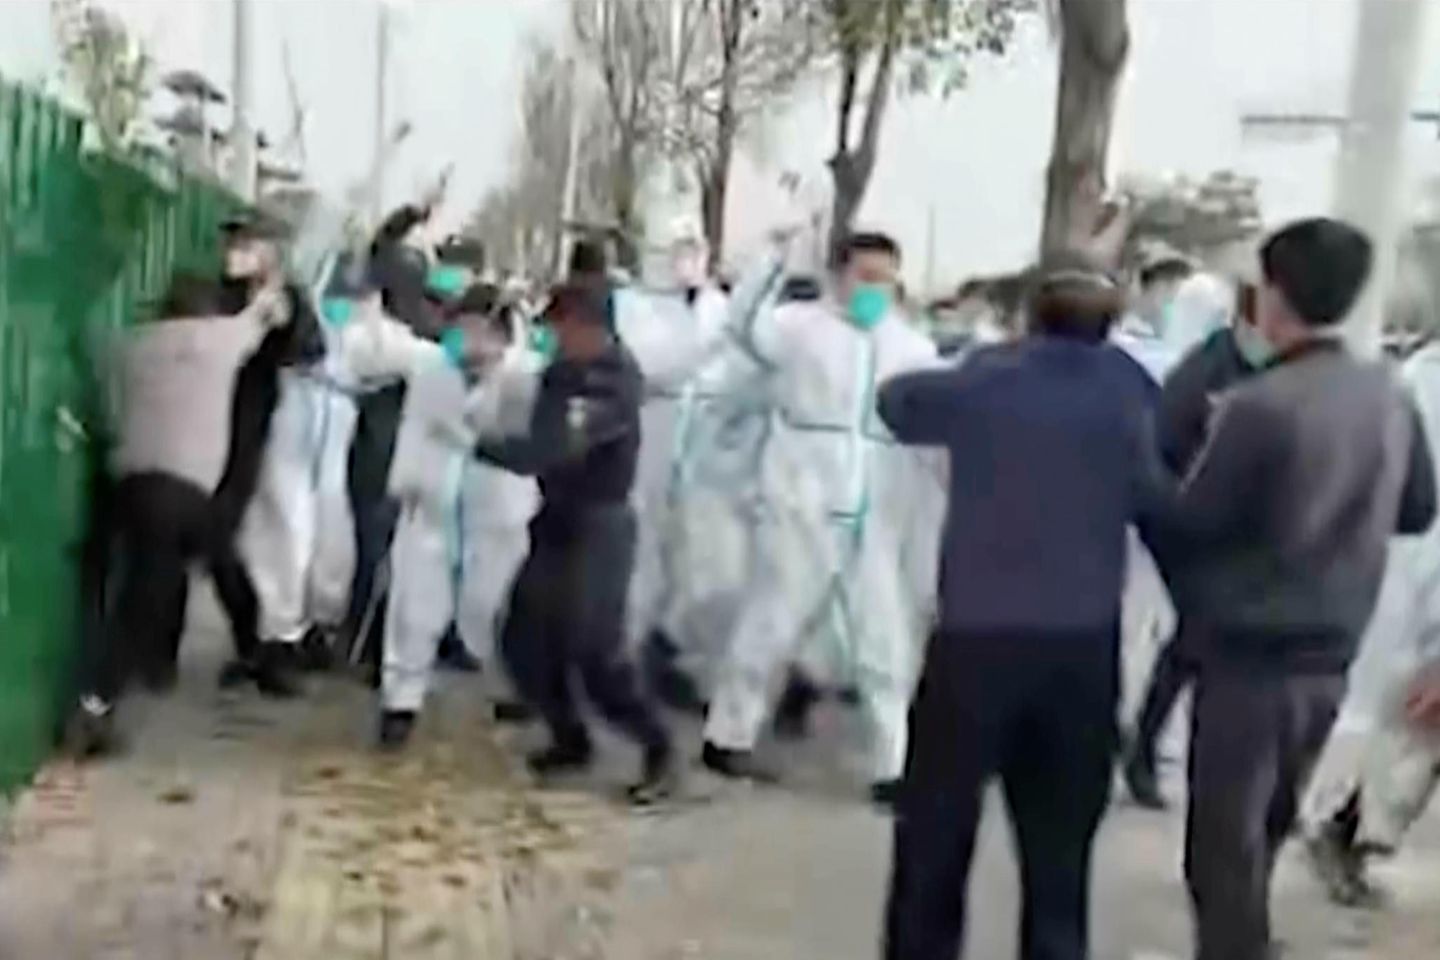 Vor dem Foxconn-Werk in Zhengzhou kam es wiederholt zu Protesten, die gewaltsam niedergeschlagen wurden